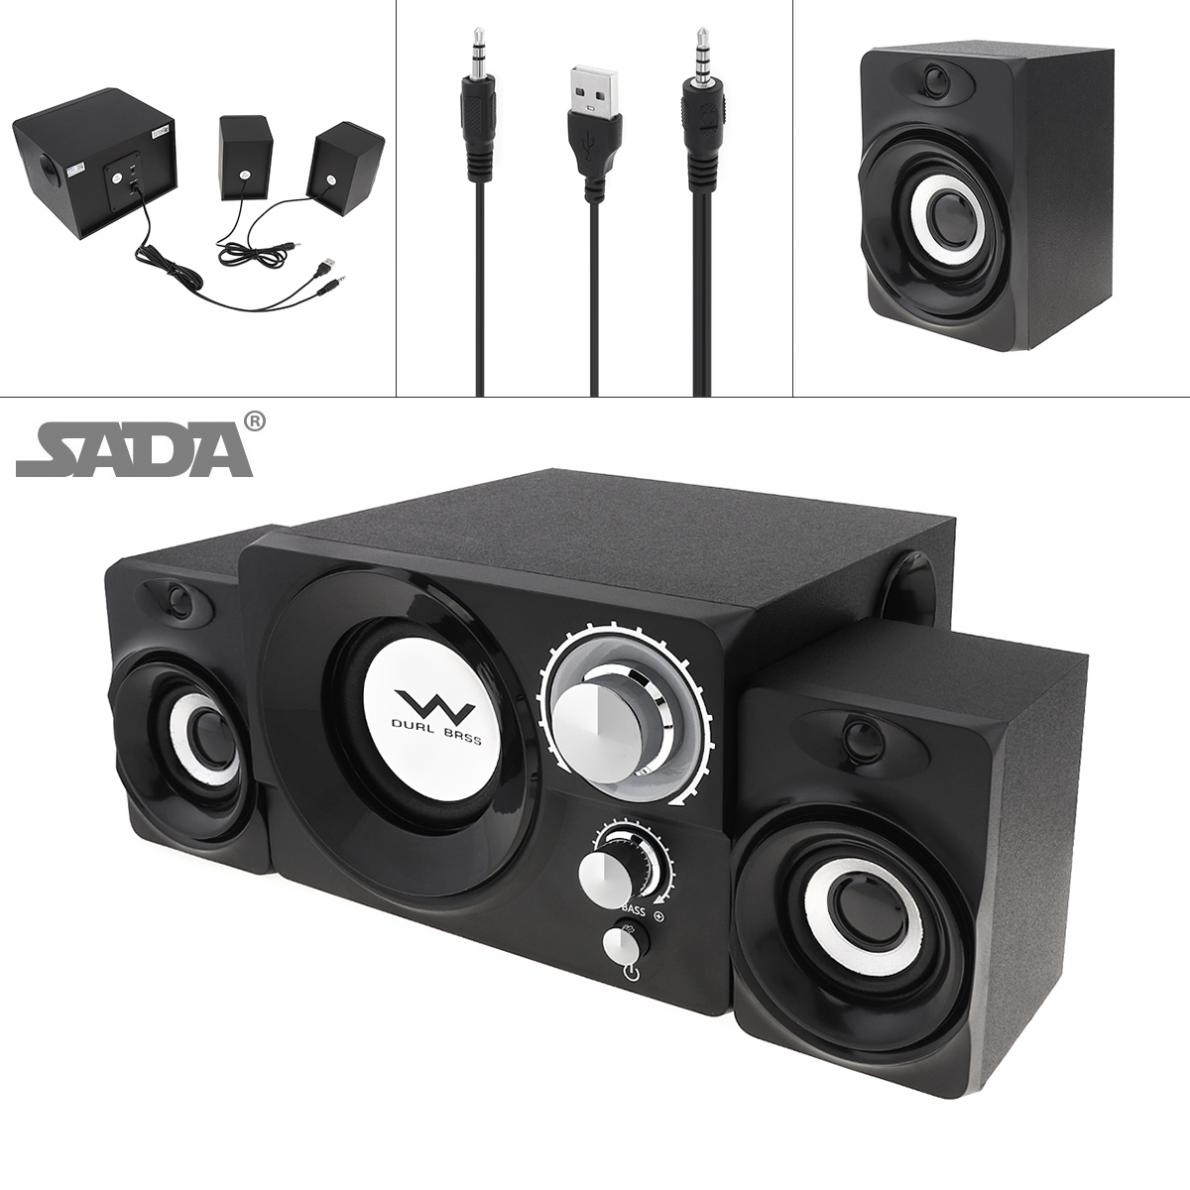 Sada S-20 2.1 Mini Black 3W Houten Subwoofer Draagbare Muziek Usb Computer Speaker Voor Desktop/Tv/Pc/Smartphone